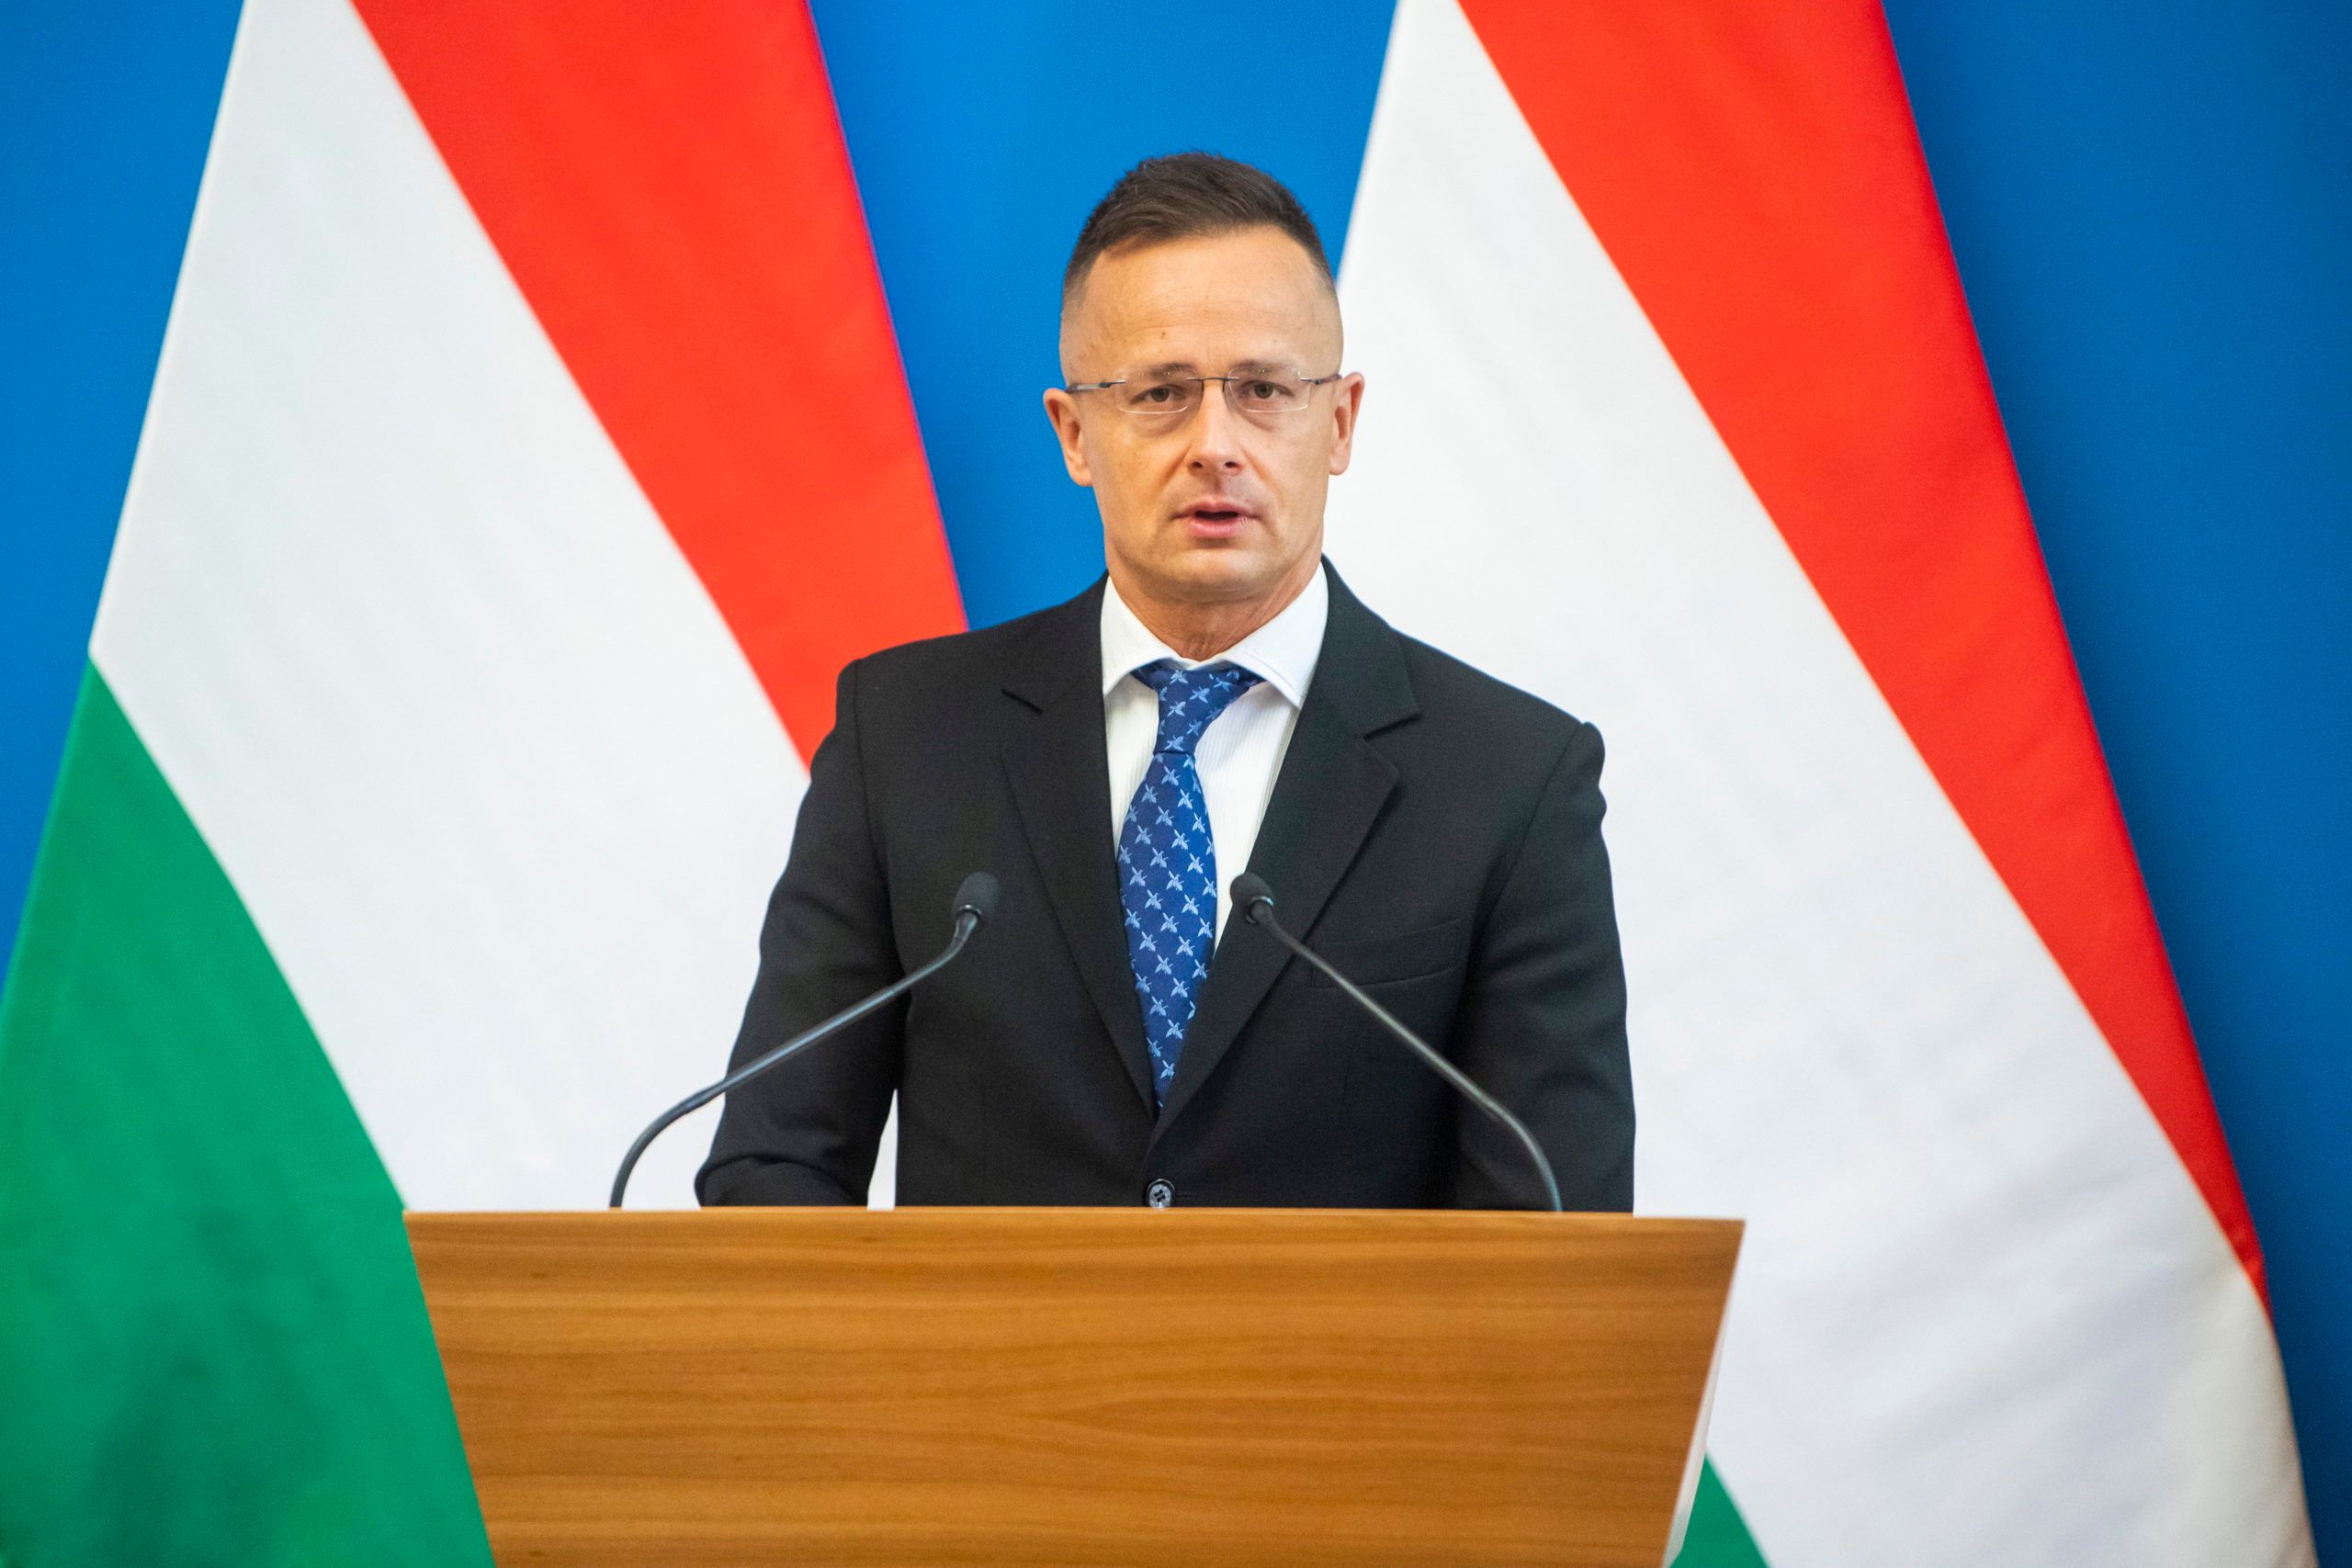 Сийярто заявил, что до встречи Зеленского и Орбана еще долгий путь - 24 Канал